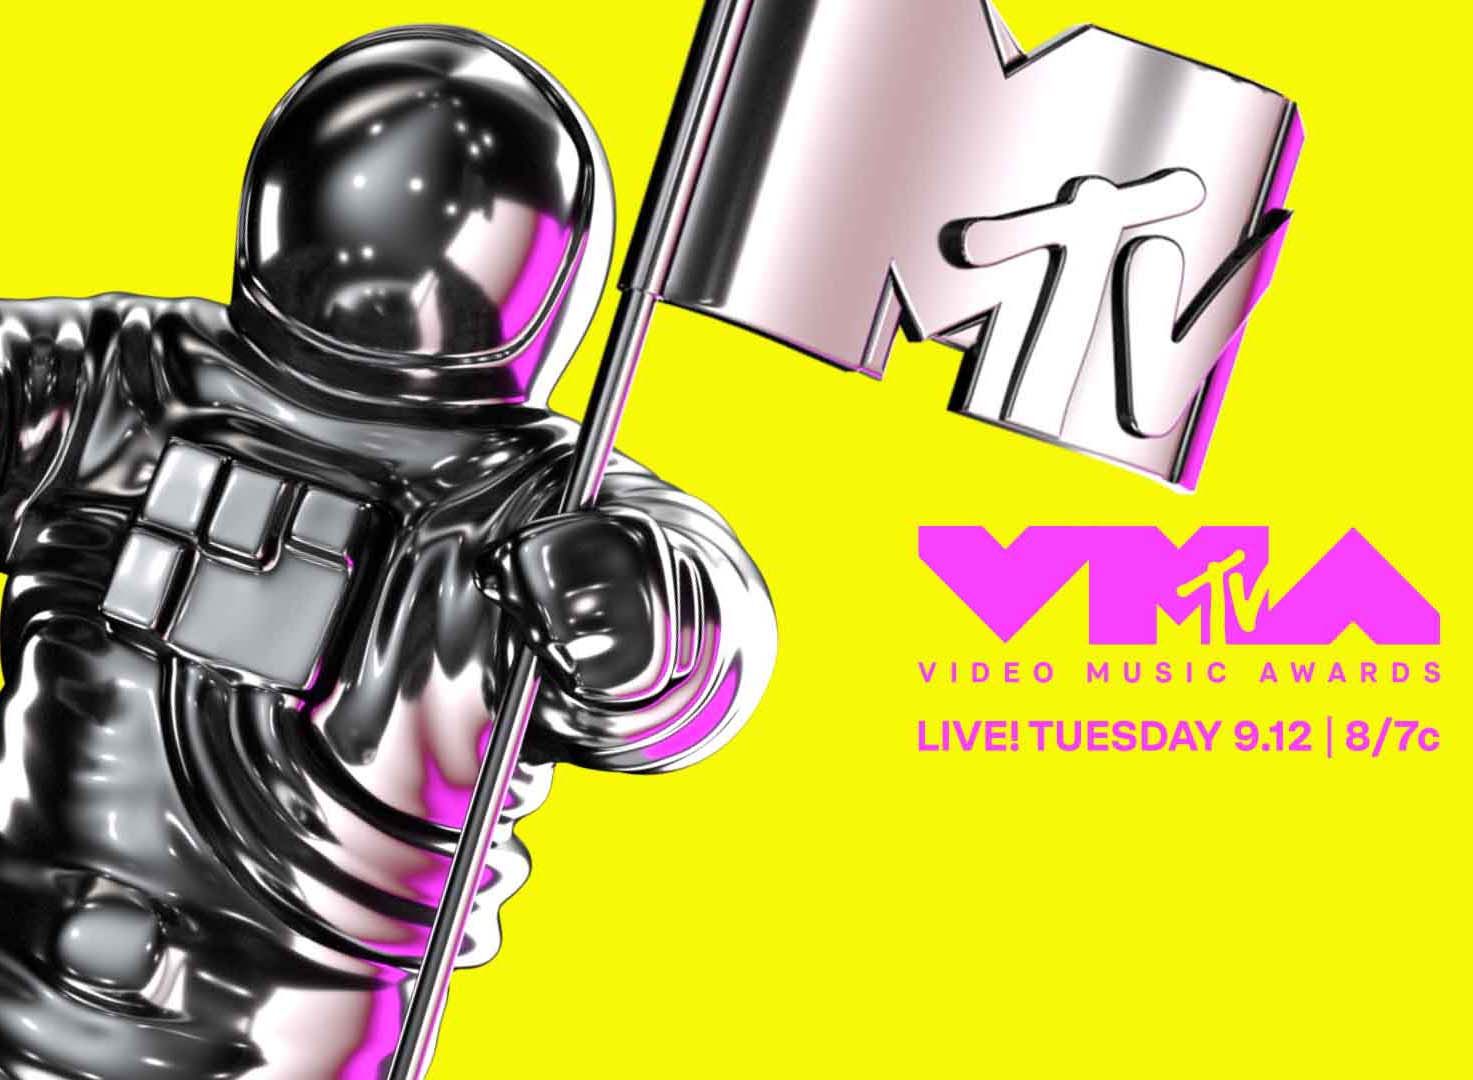 Stream VMAs Live with Sling TV